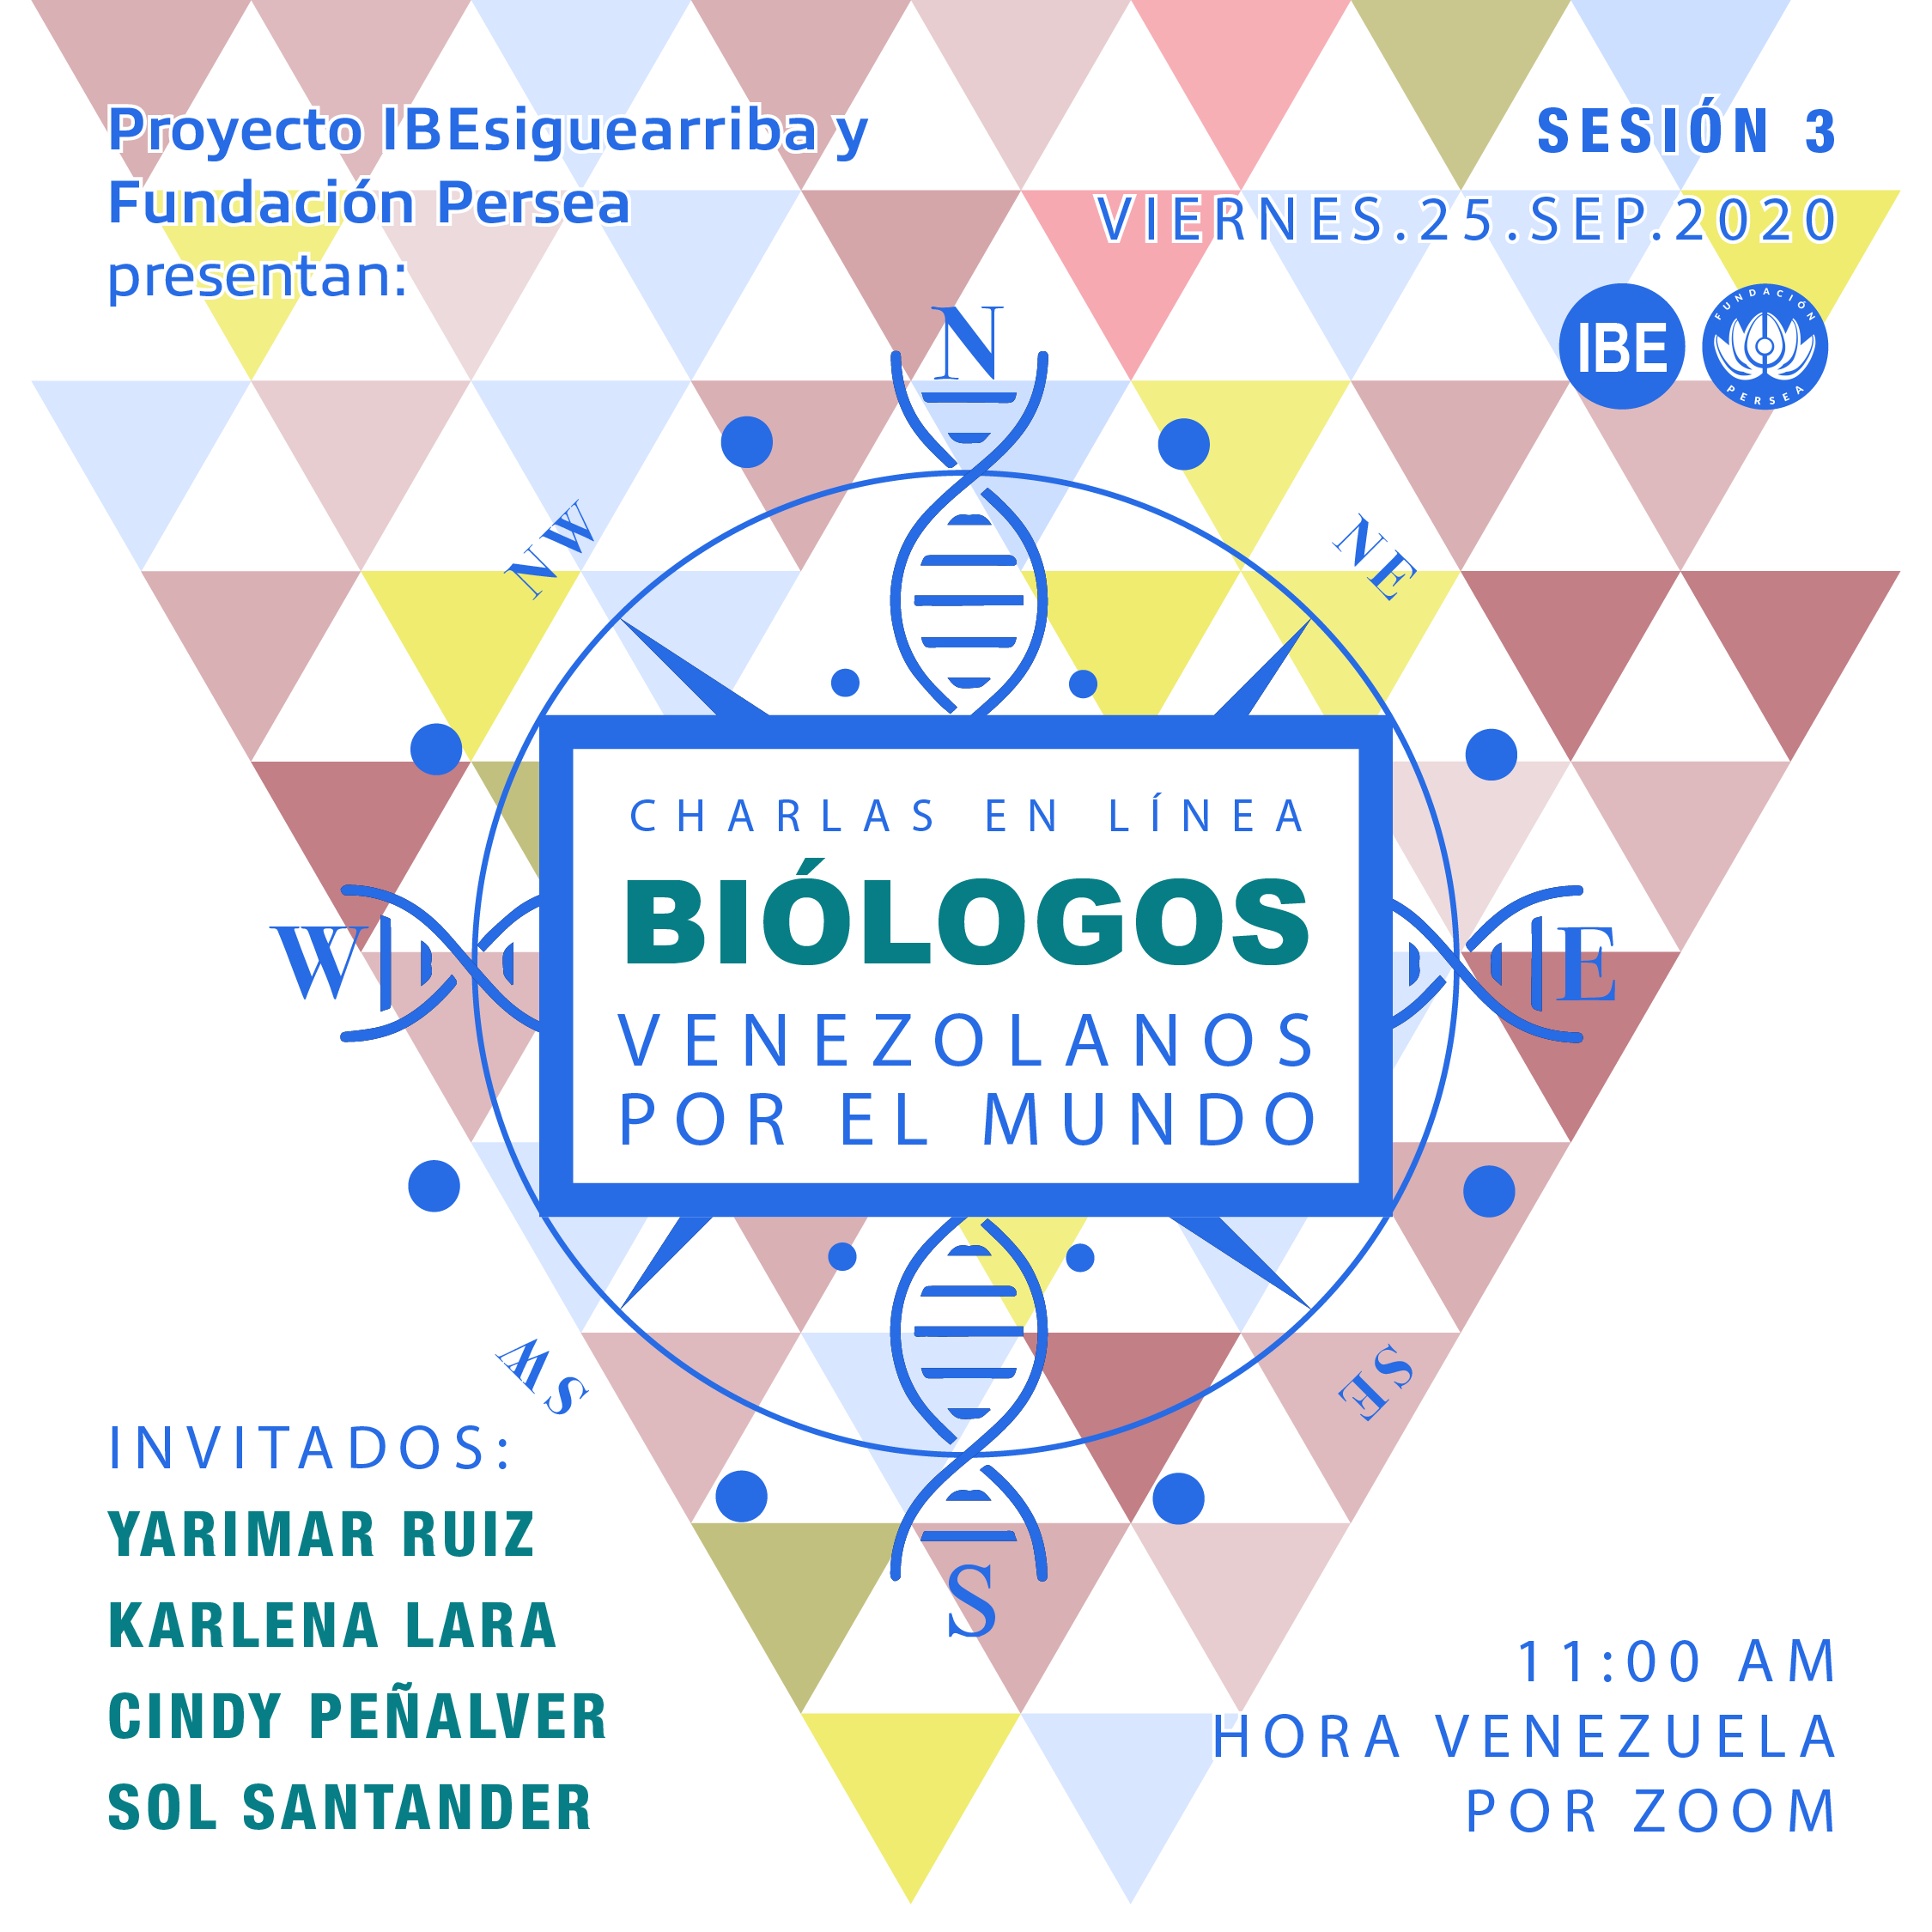 biologos venezolanos por el mundo